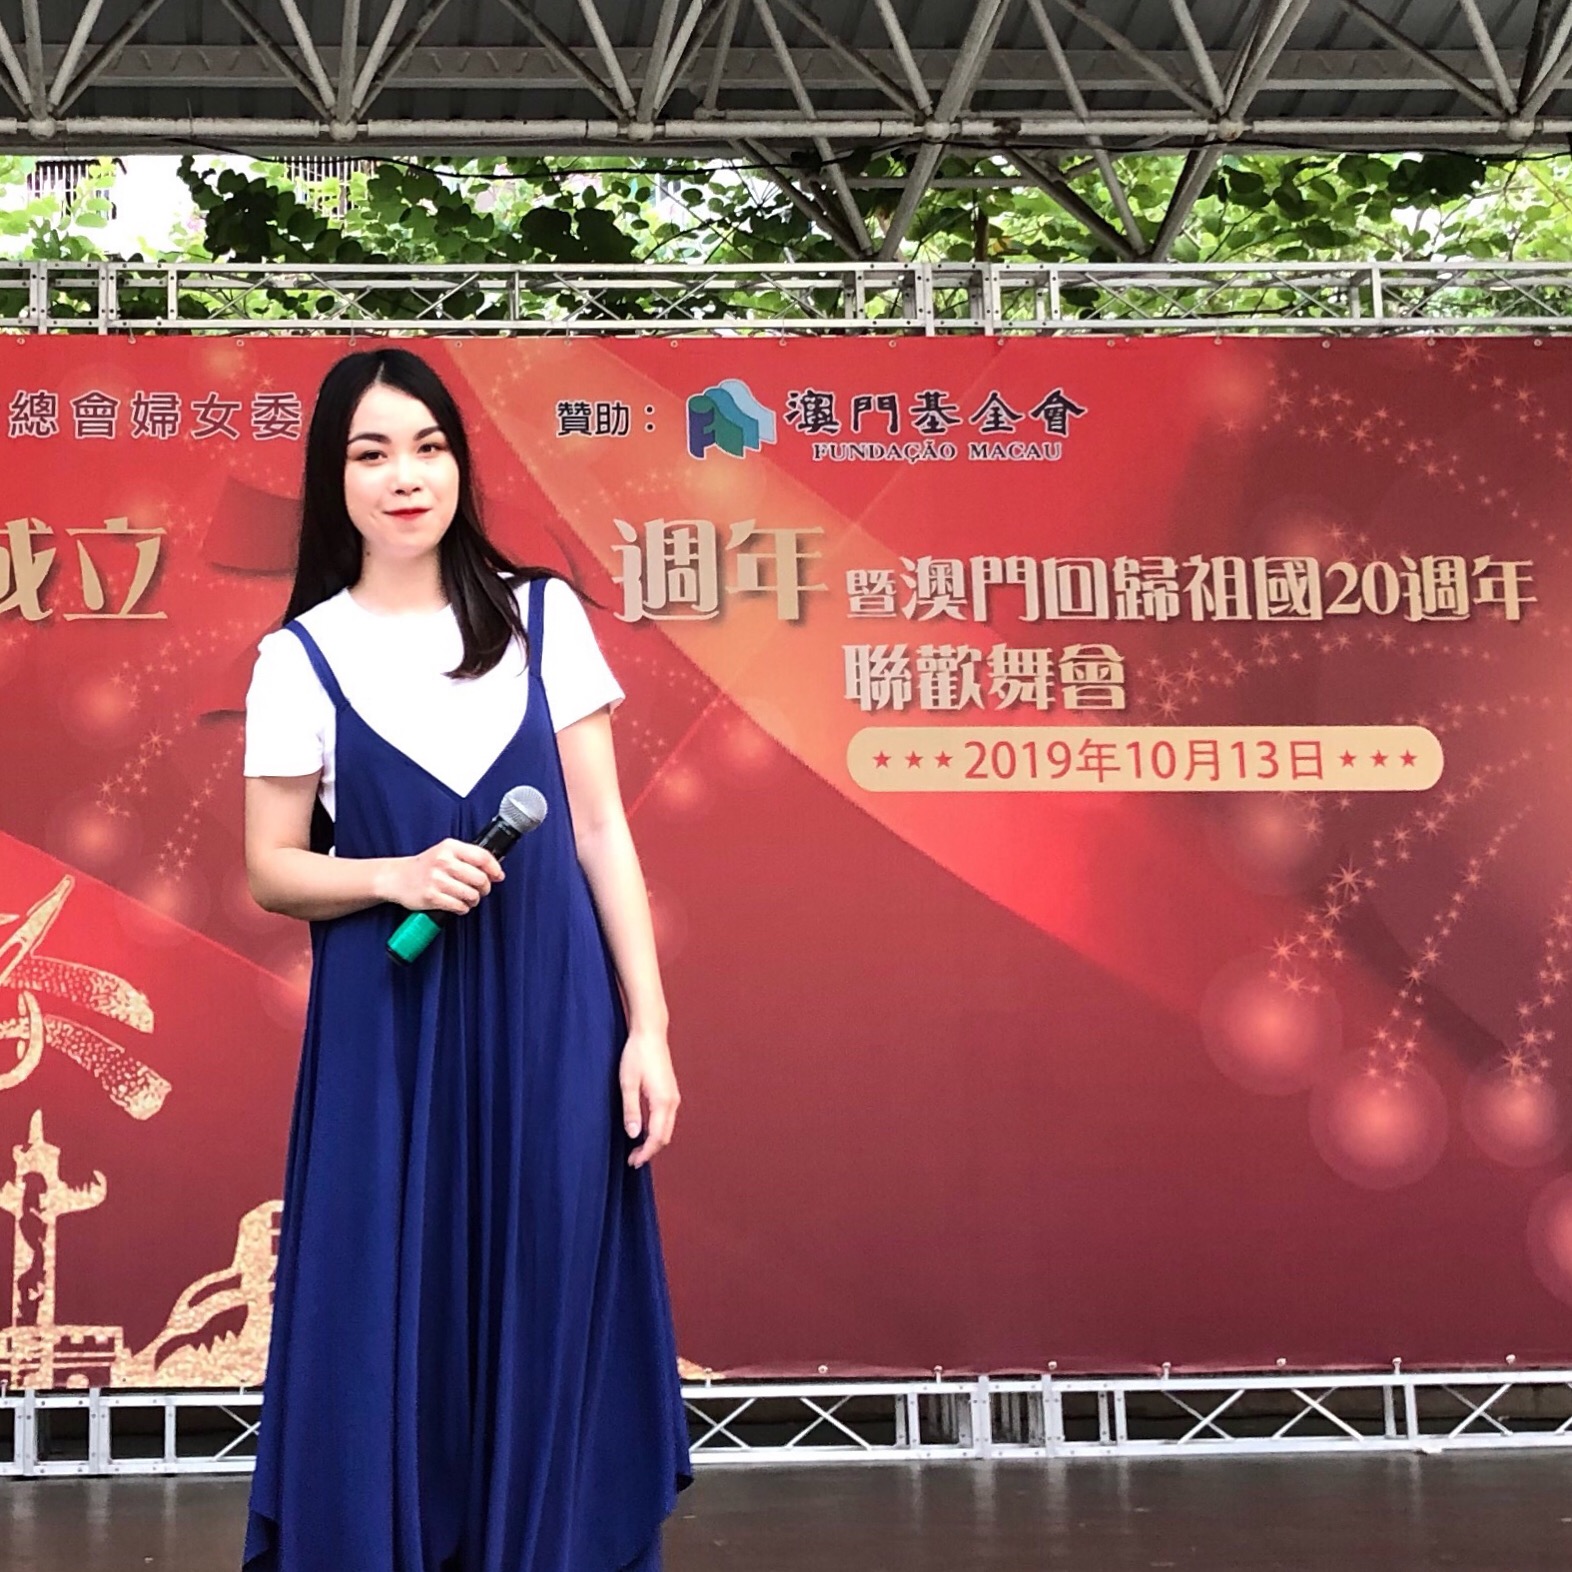 Rainbow 陳彩虹司儀工作紀錄: 慶祝中華人民共和國成立70週年暨澳門回歸祖國20週年聯歡舞會